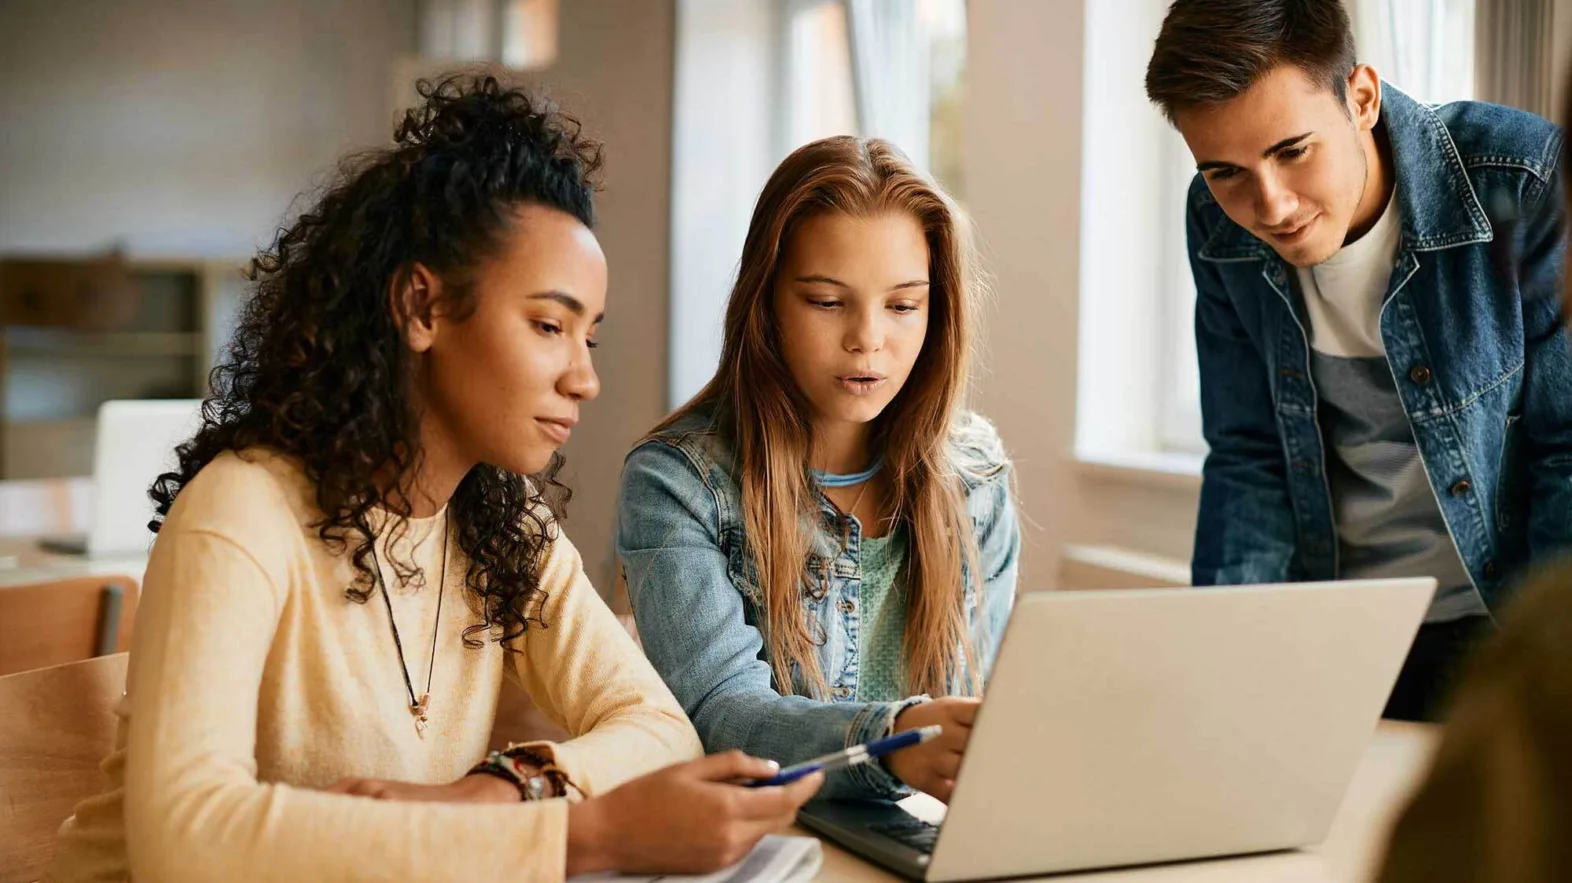 Trois jeunes à l'école regardent l'écran d'un ordinateur portable et discutent.